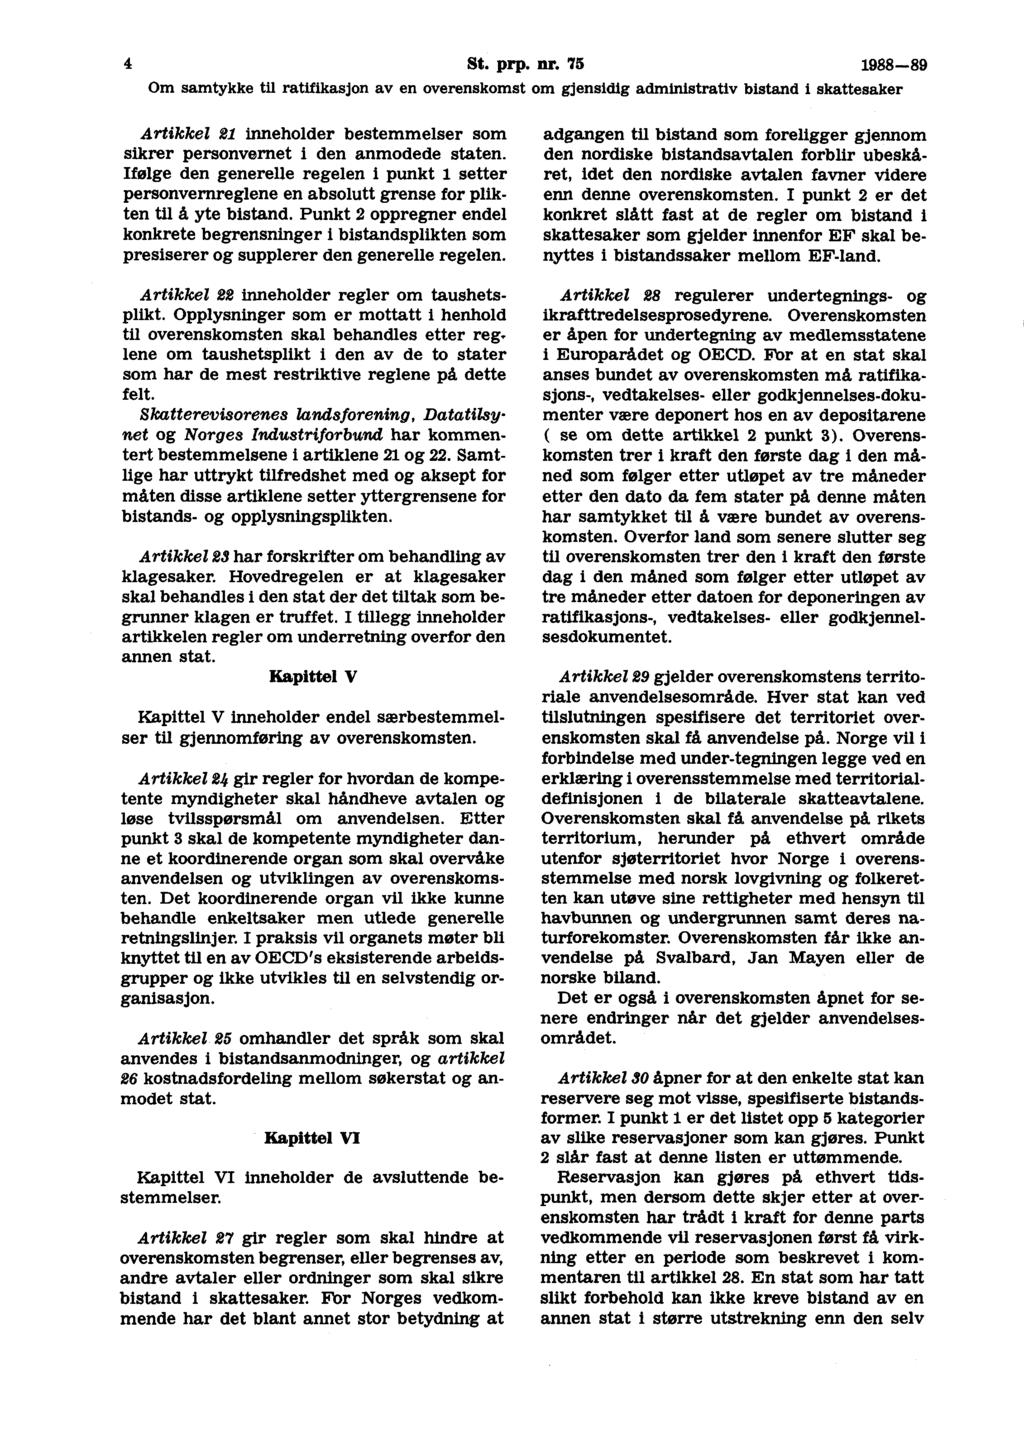 4 St. prp. nr. 75 1988-89 Artikkel 21 inneholder bestemmelser som sikrer personvernet 1 den anmodede staten.